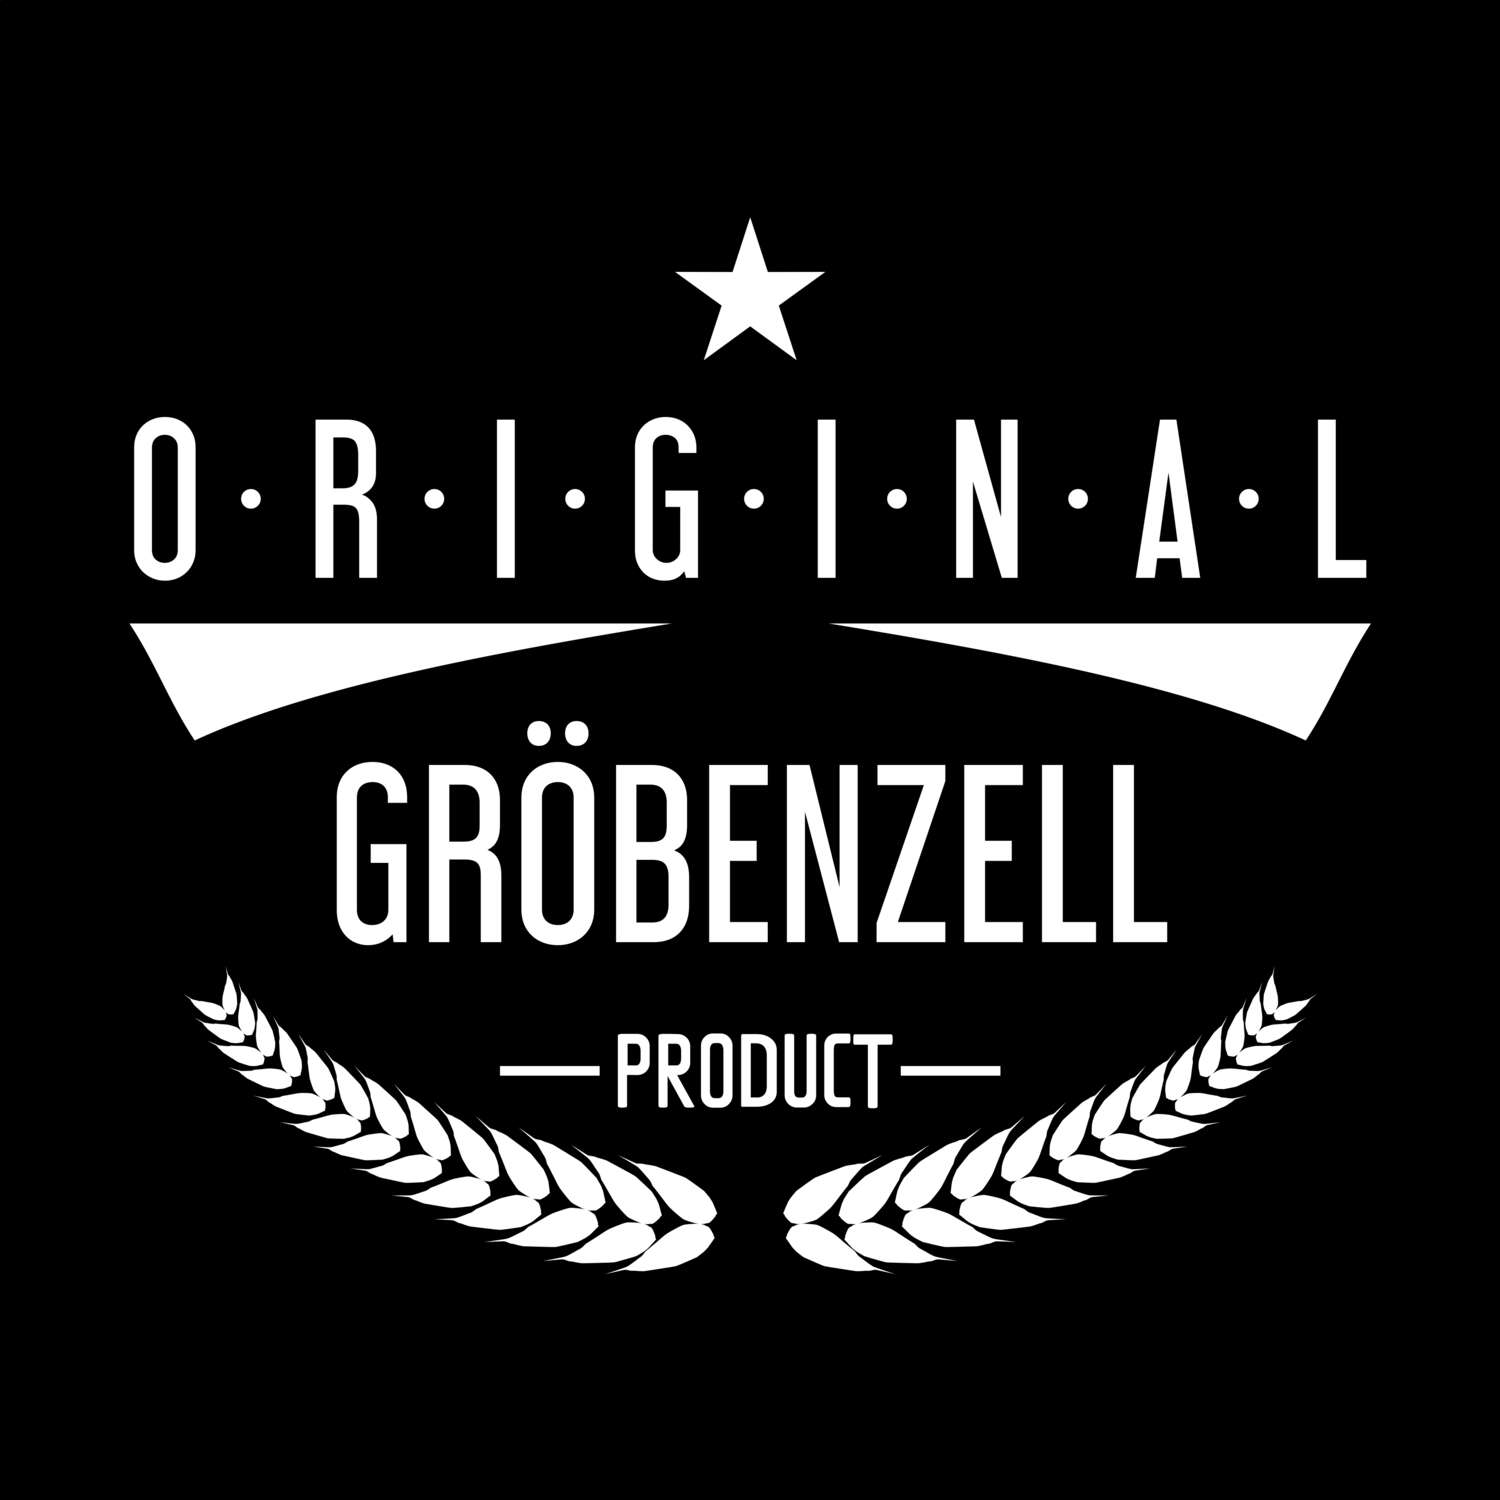 Gröbenzell T-Shirt »Original Product«